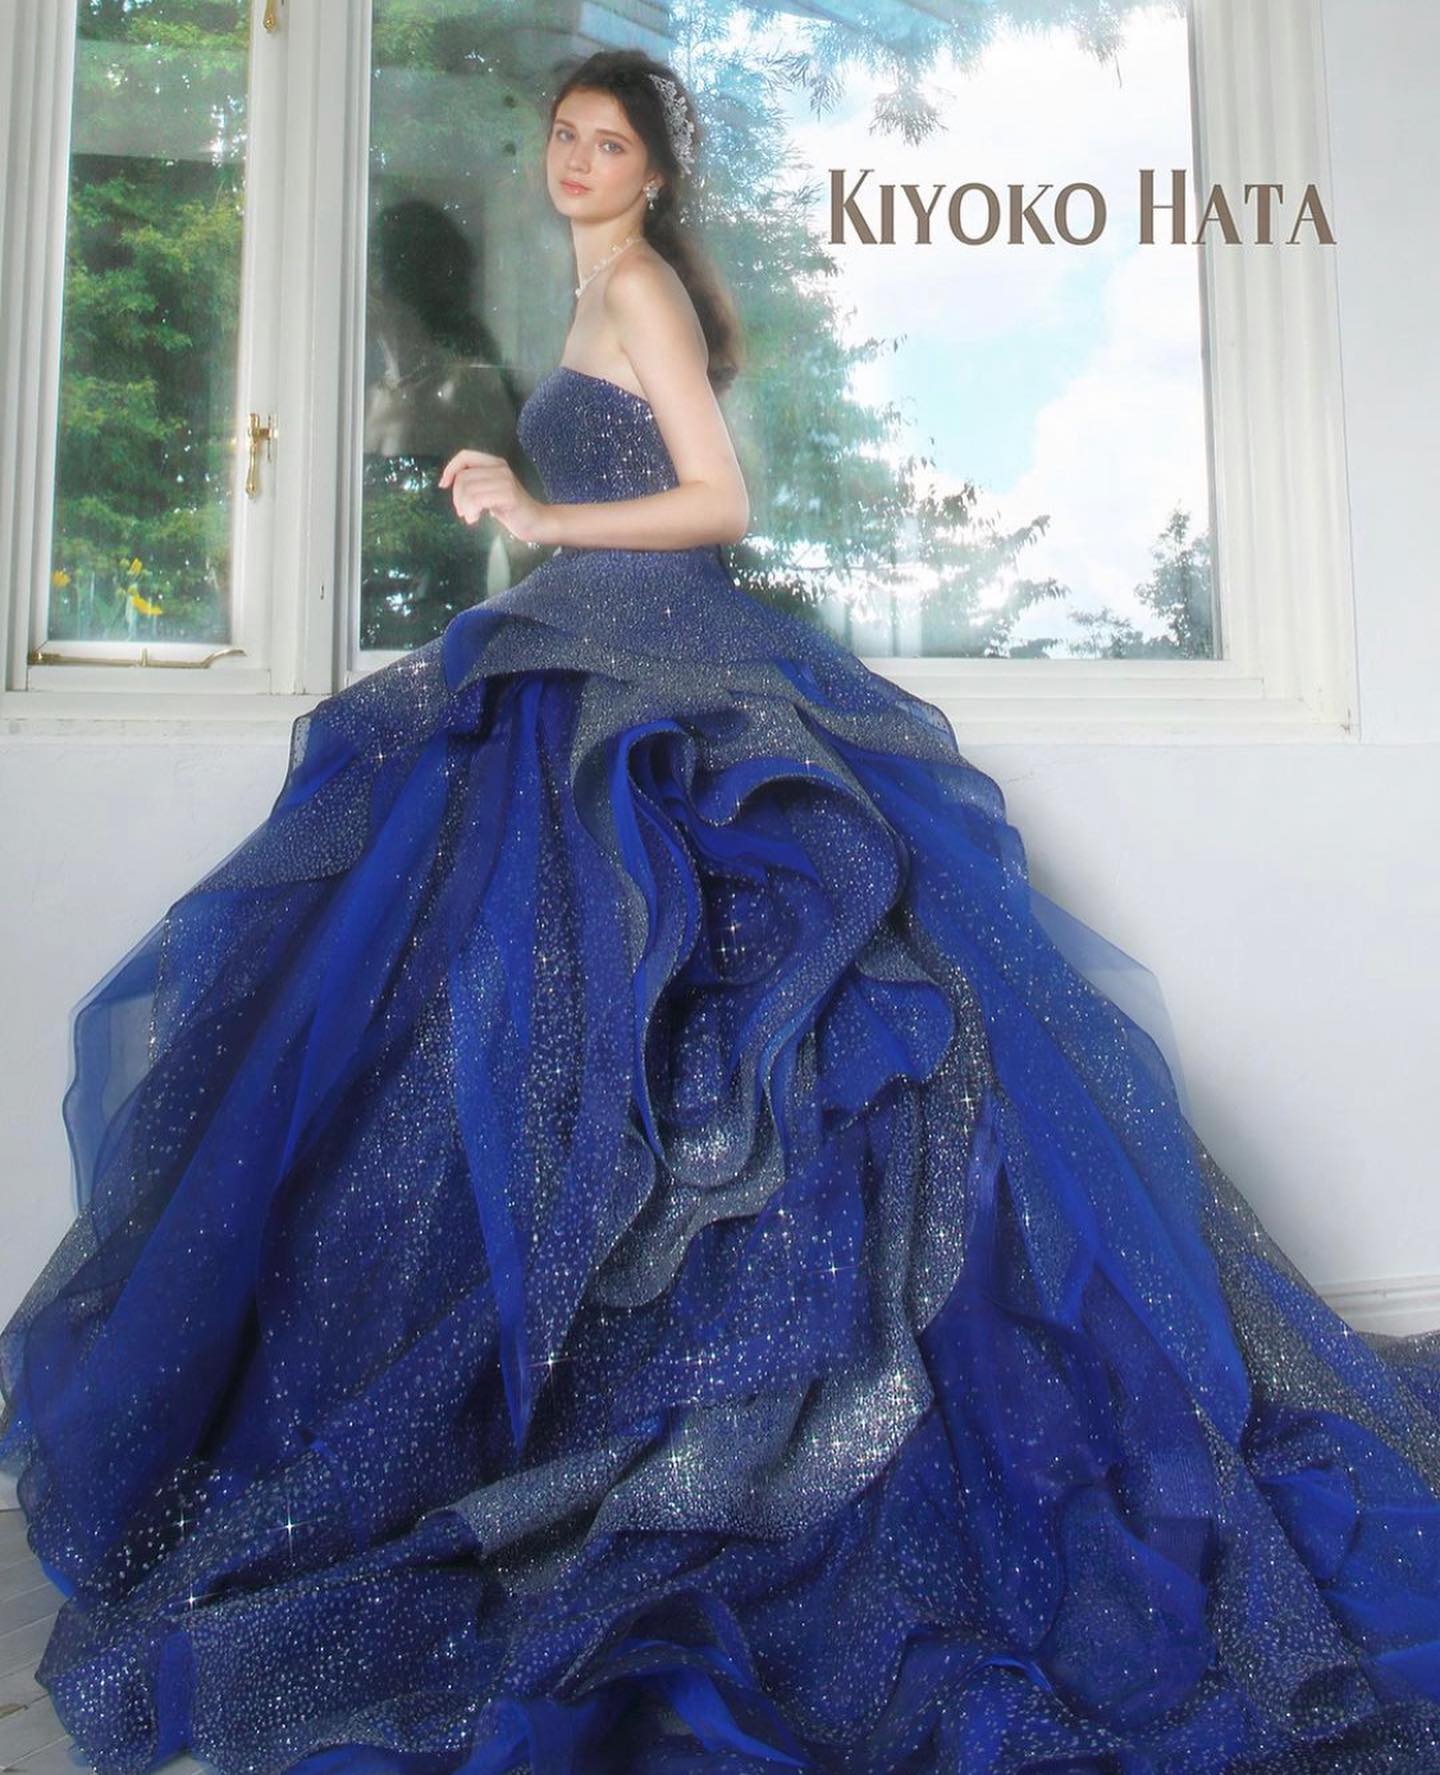 ・今日は大人気のKIYOKO HATA のカラードレスをご紹介・美しく輝く細かいグリッターのグラデーションと、動くたびにランダムに揺れるフリルが魅力的なドレス・上品なネイビーなので、大人っぽい雰囲気も演出できます・お気軽にお問い合わせ下さいませ・KIYOKO HATA（キヨコハタ）　KH-0449CD0353・#wedding #weddingdress #bridalhiro #kiyokohata #ウェディングドレス #プレ花嫁 #ドレス試着　#ヘアメイク #結婚式  #ドレス選び #前撮り #後撮り #フォトウェディング　#ウェディングヘア  #フォト婚 #前撮り写真　#ブライダルフォト #カップルフォト #ウェディングドレス探し #ウェディングドレス試着　#レンタルドレス #ドレスショップ #ブライダルヒロ #ゼクシィ #プリンセスライン #ドレス迷子 #キヨコハタ #キヨコハタドレス